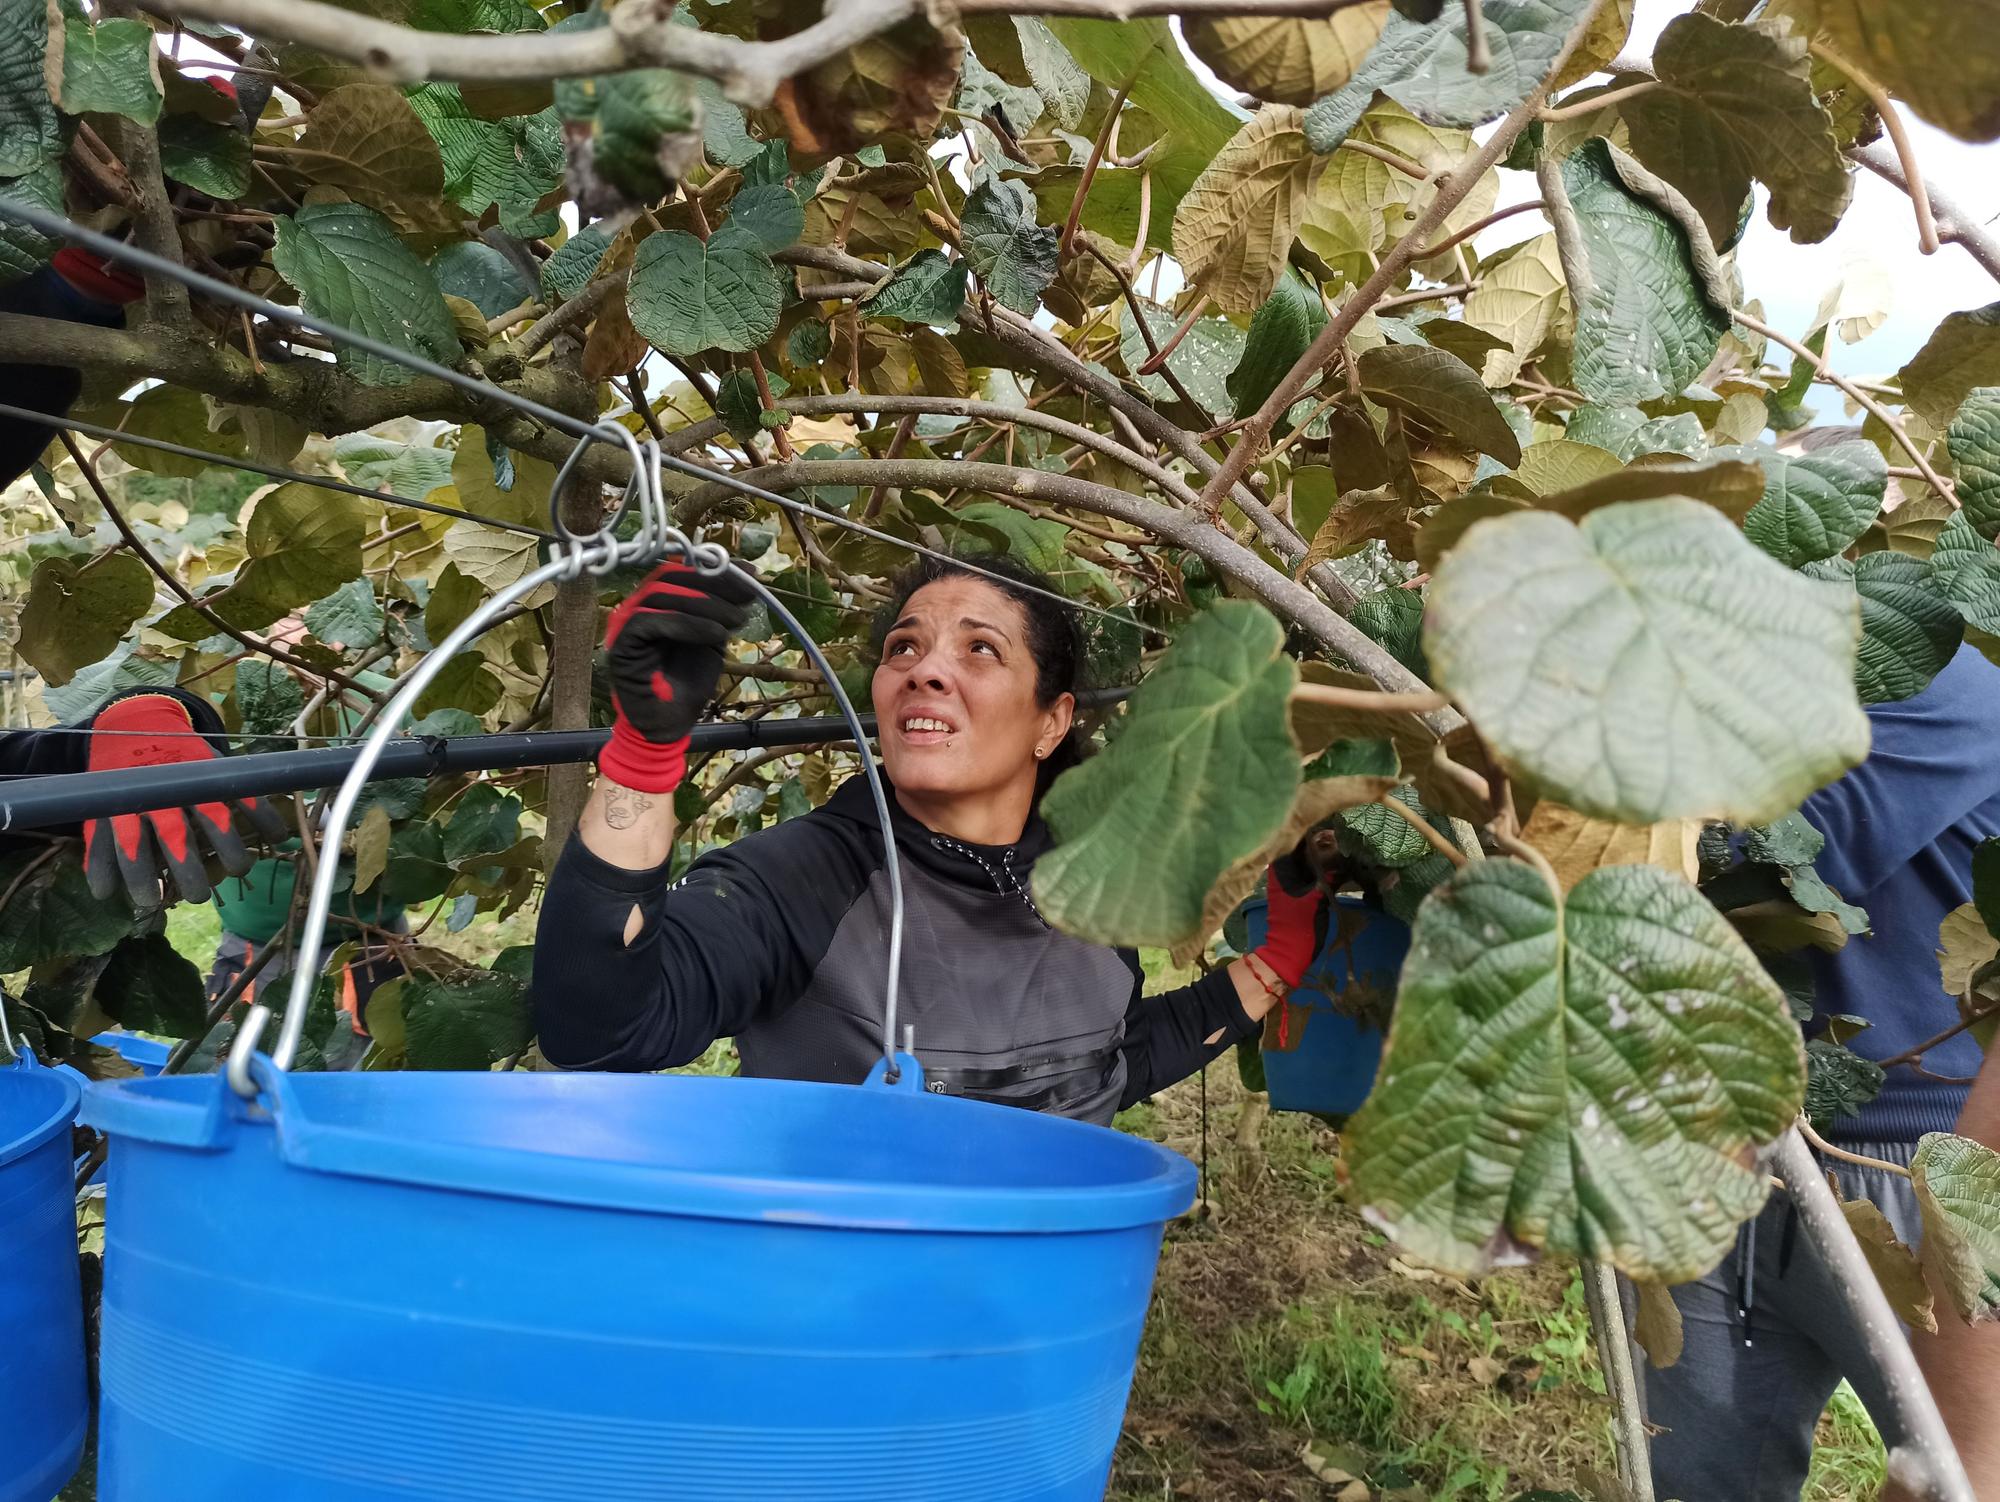 EN IMÁGENES: Inicio de la cosecha de kiwis en Pravia